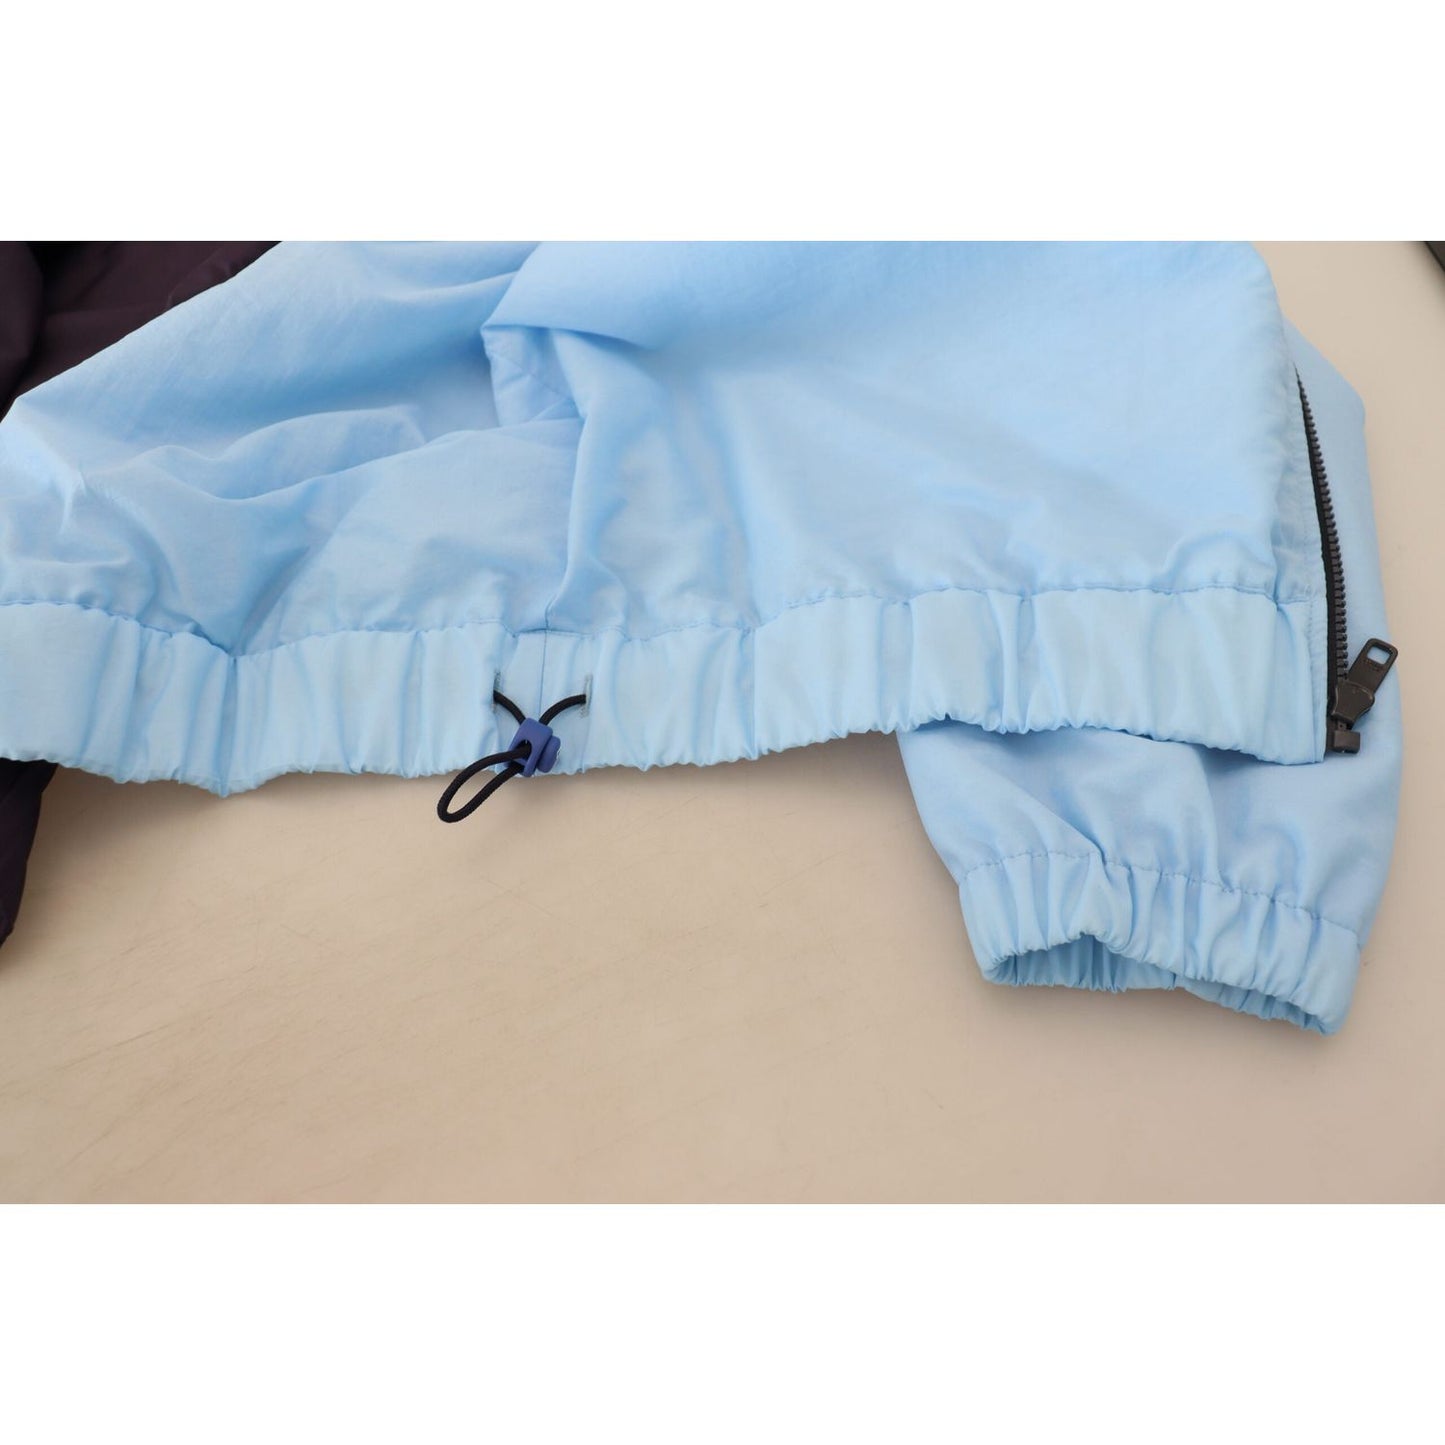 Dolce & Gabbana Elegant Hooded Blue Jacket - Full Zipper Closure black-blue-dg-hooded-full-zip-men-jacket